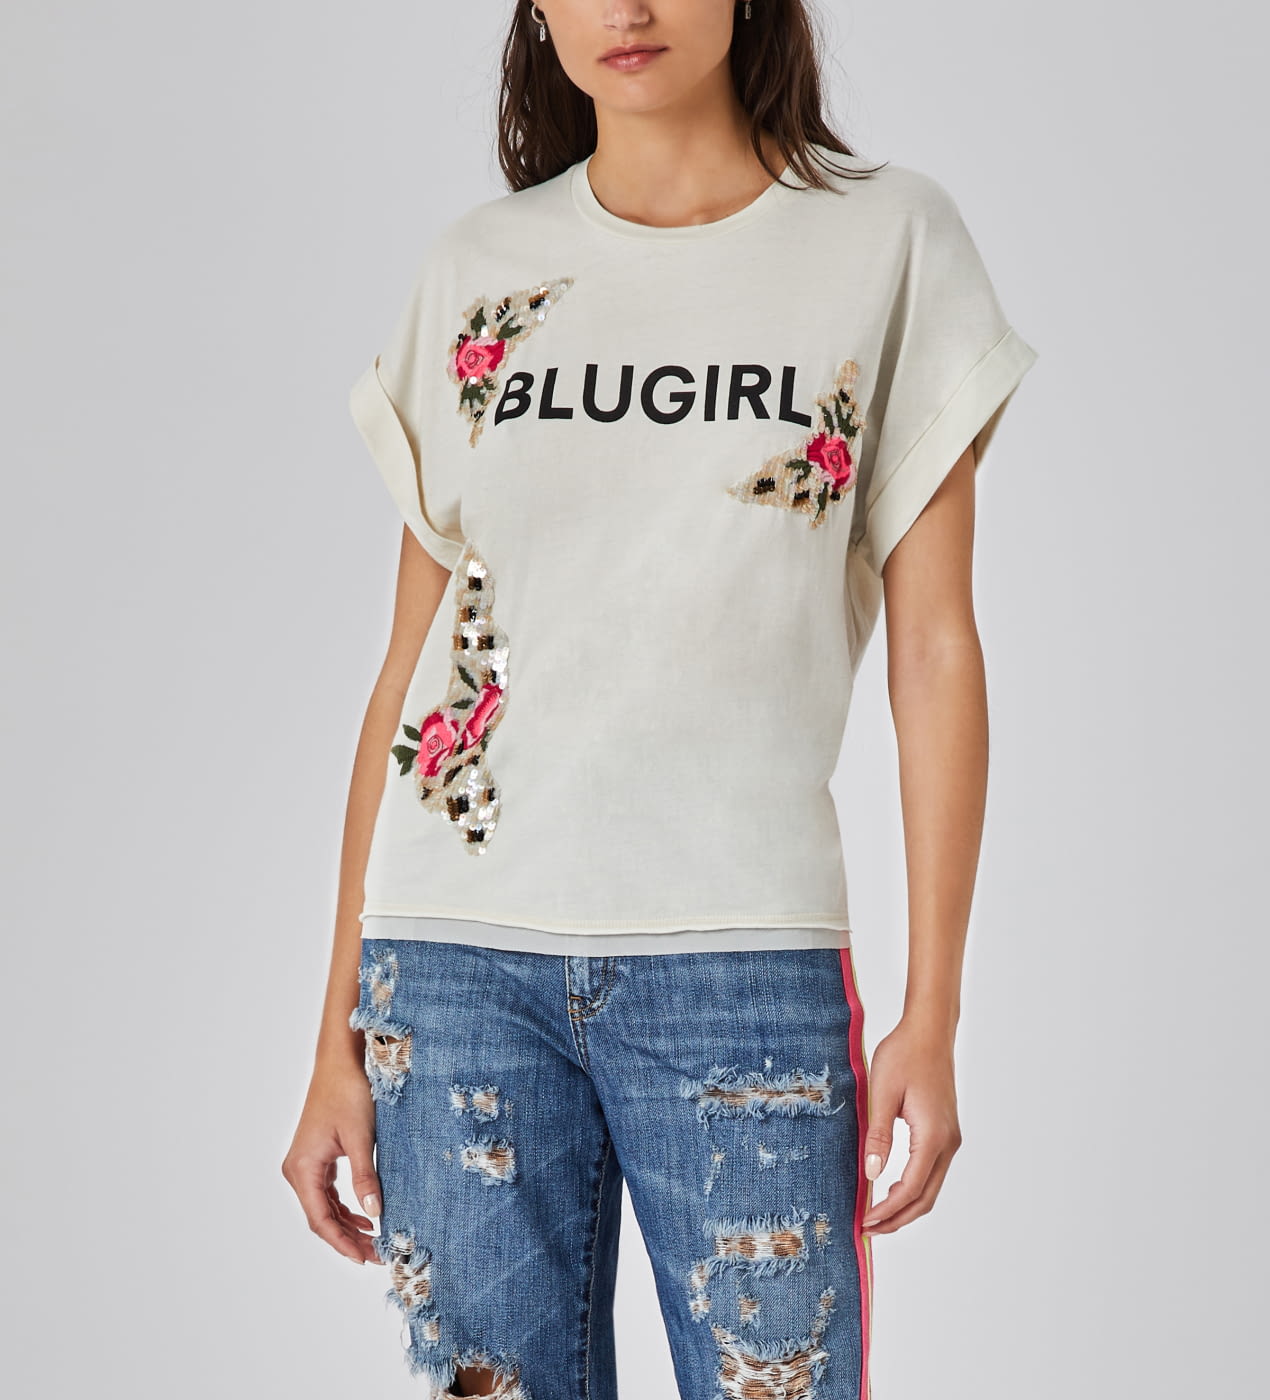 BLUGIRL camiseta blanca con logo y flores